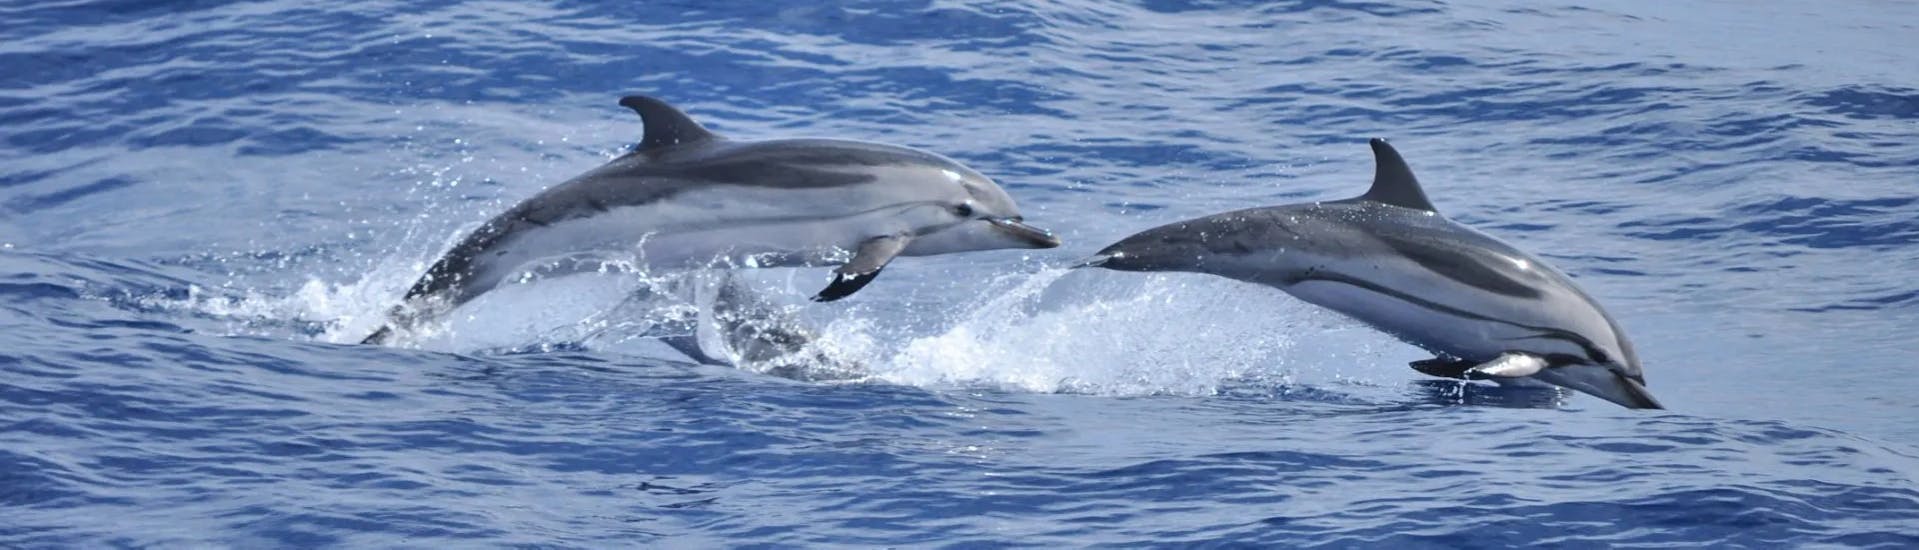 Les dauphins sautent pendant la Balade en bateau à Figarolo avec Observation des dauphins avec Blue Deep Tours Golfo Aranci.